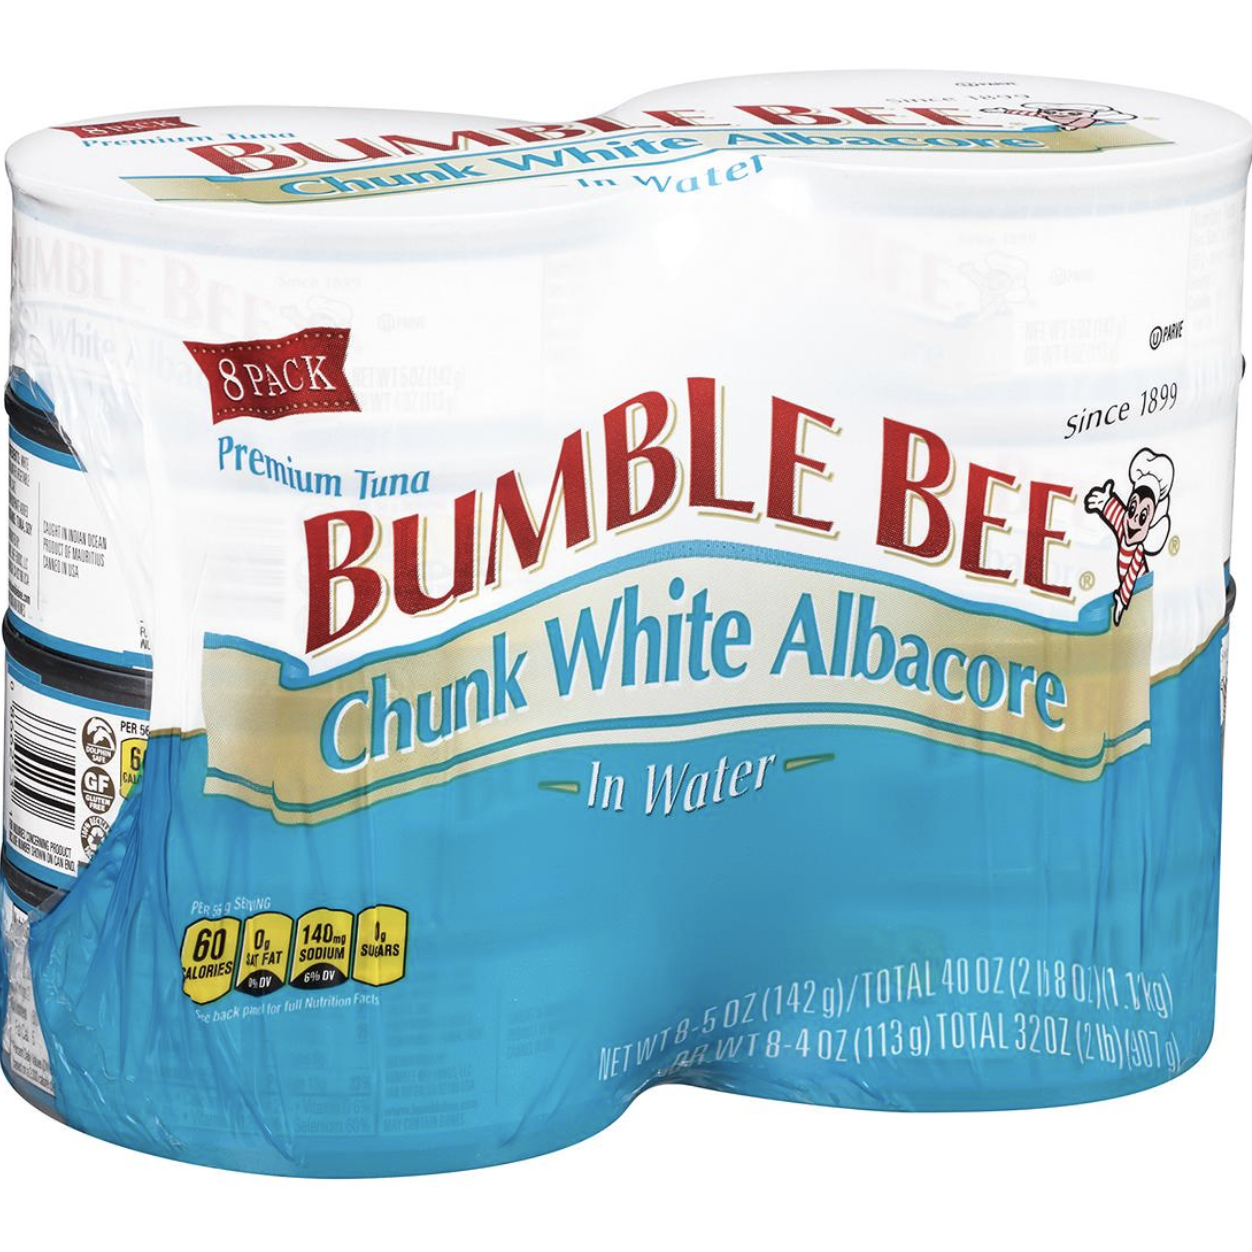 Bumble Bee Chunk White Albacore Tuna in Water, 8 pk./5 oz.